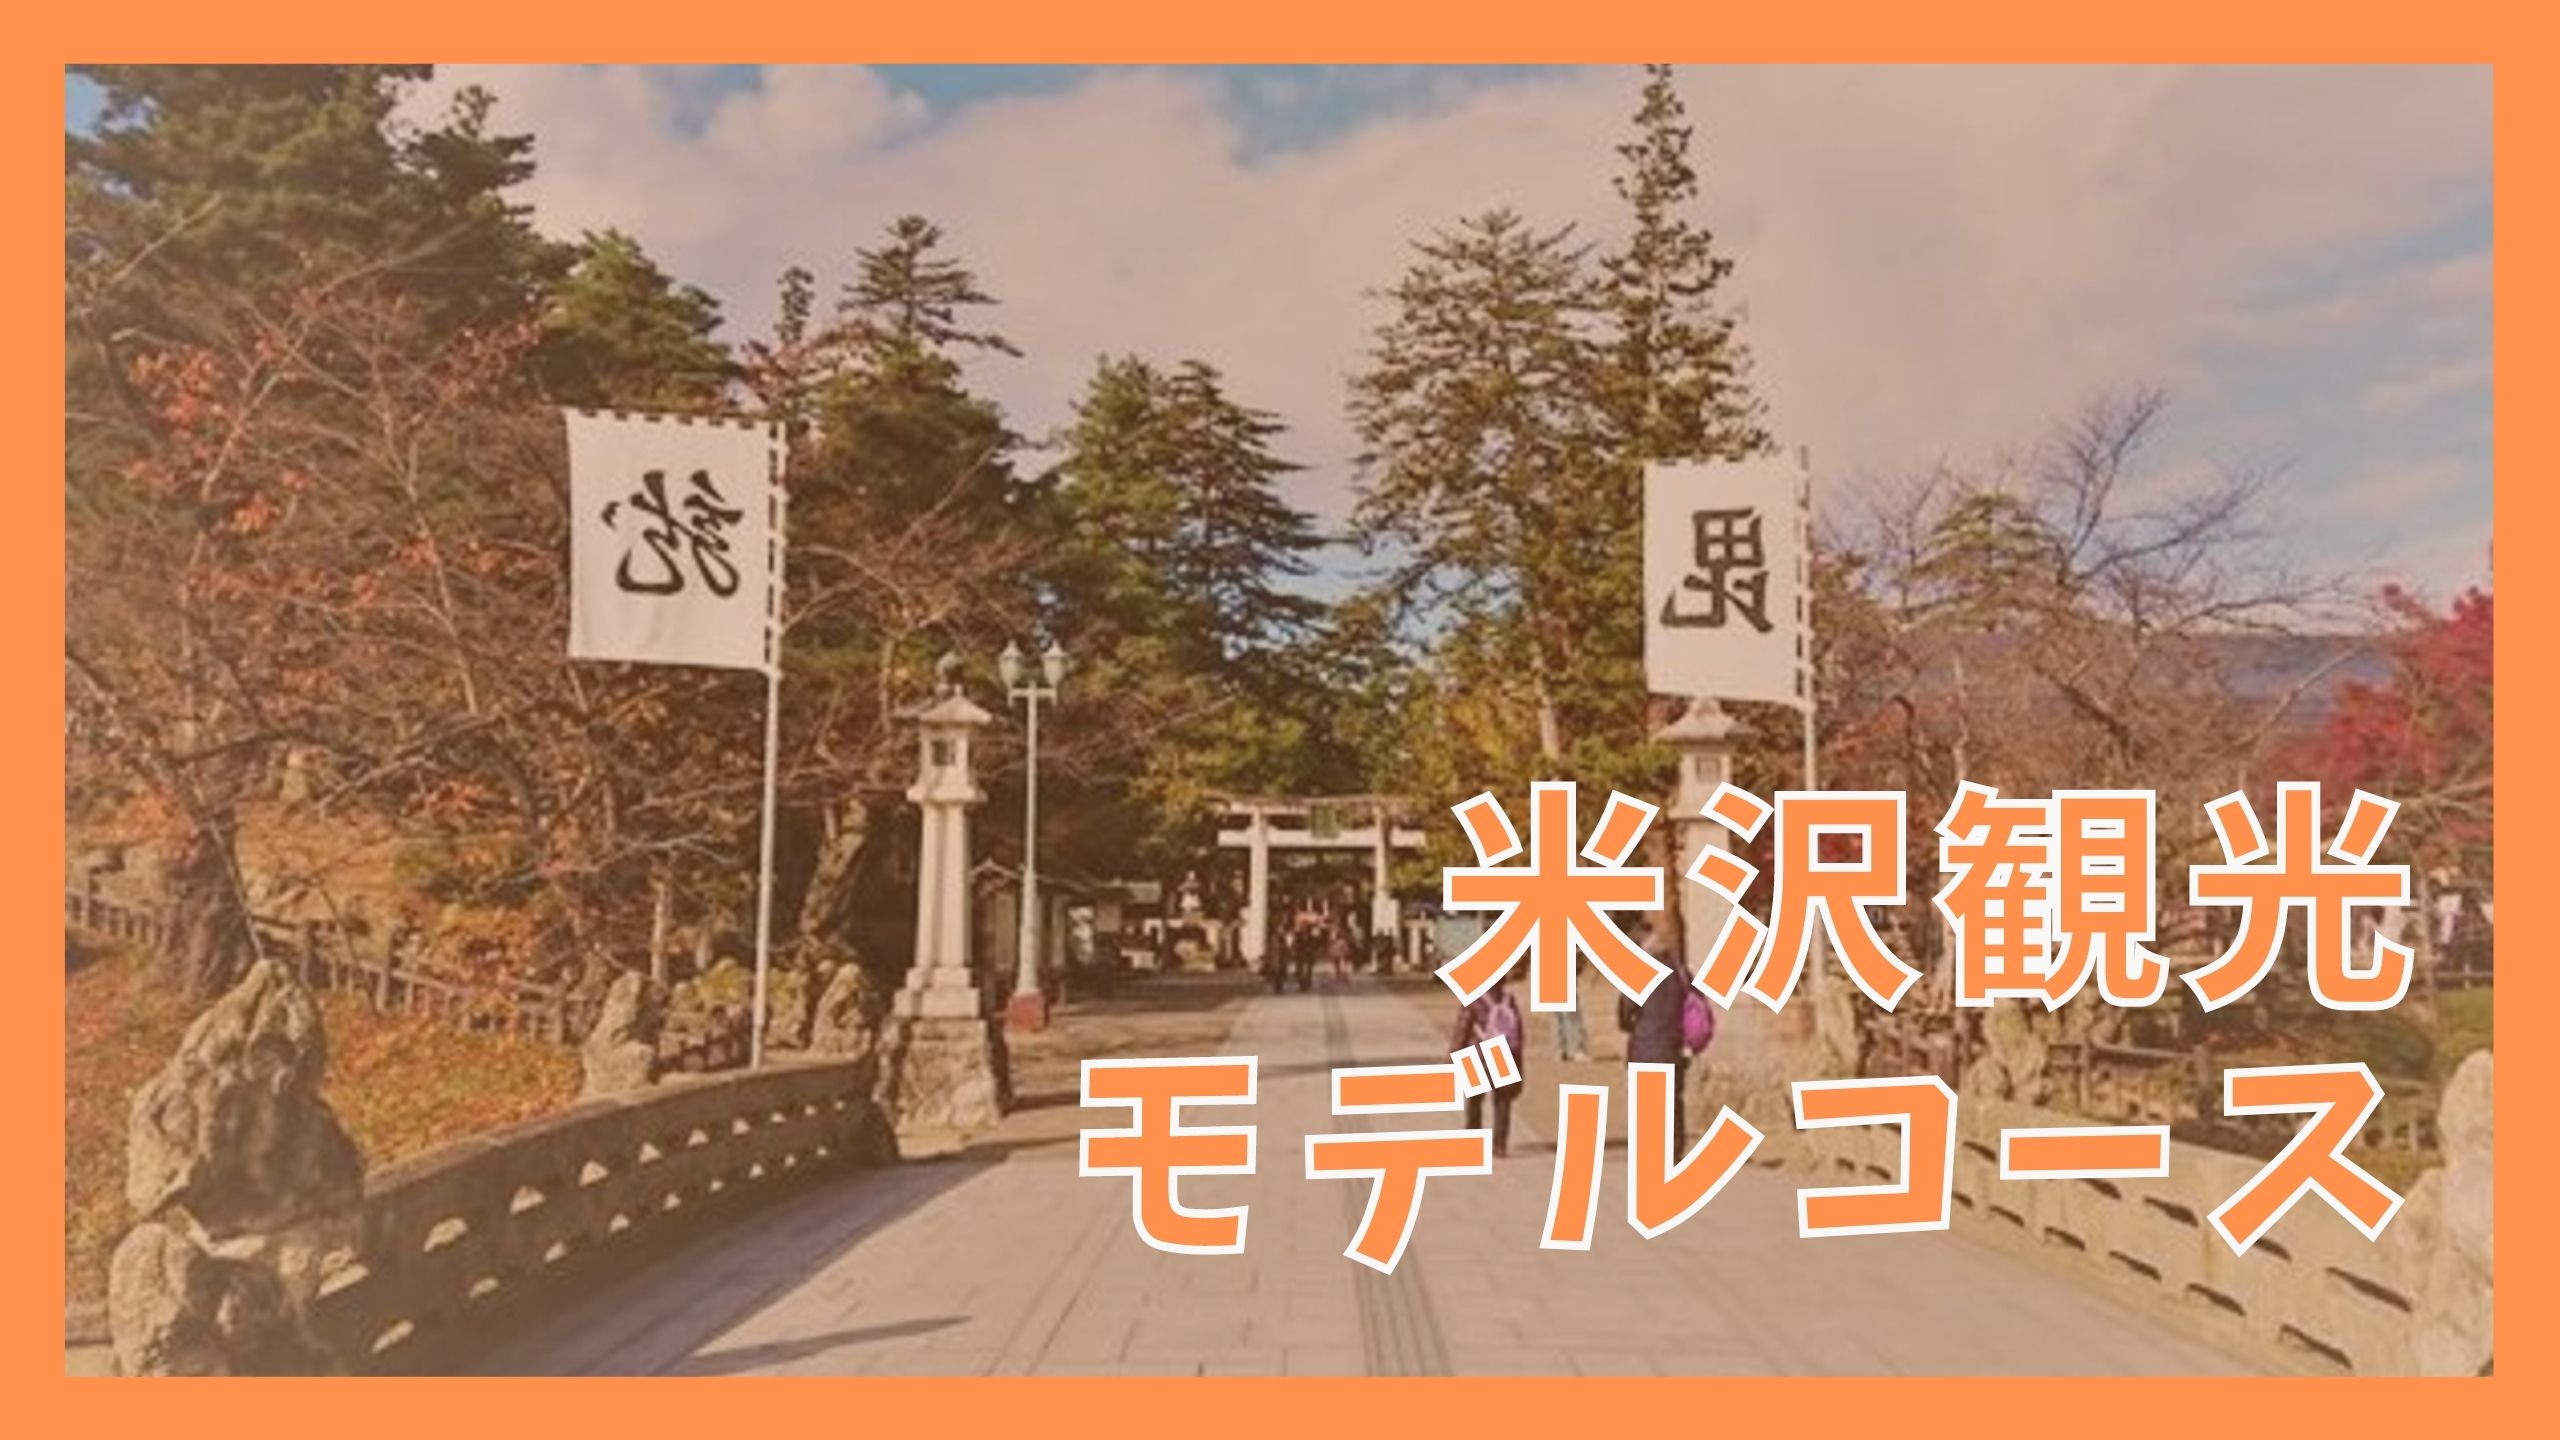 米沢観光モデルコース 日帰りで巡る10の観光スポット ジャパンワンダラー